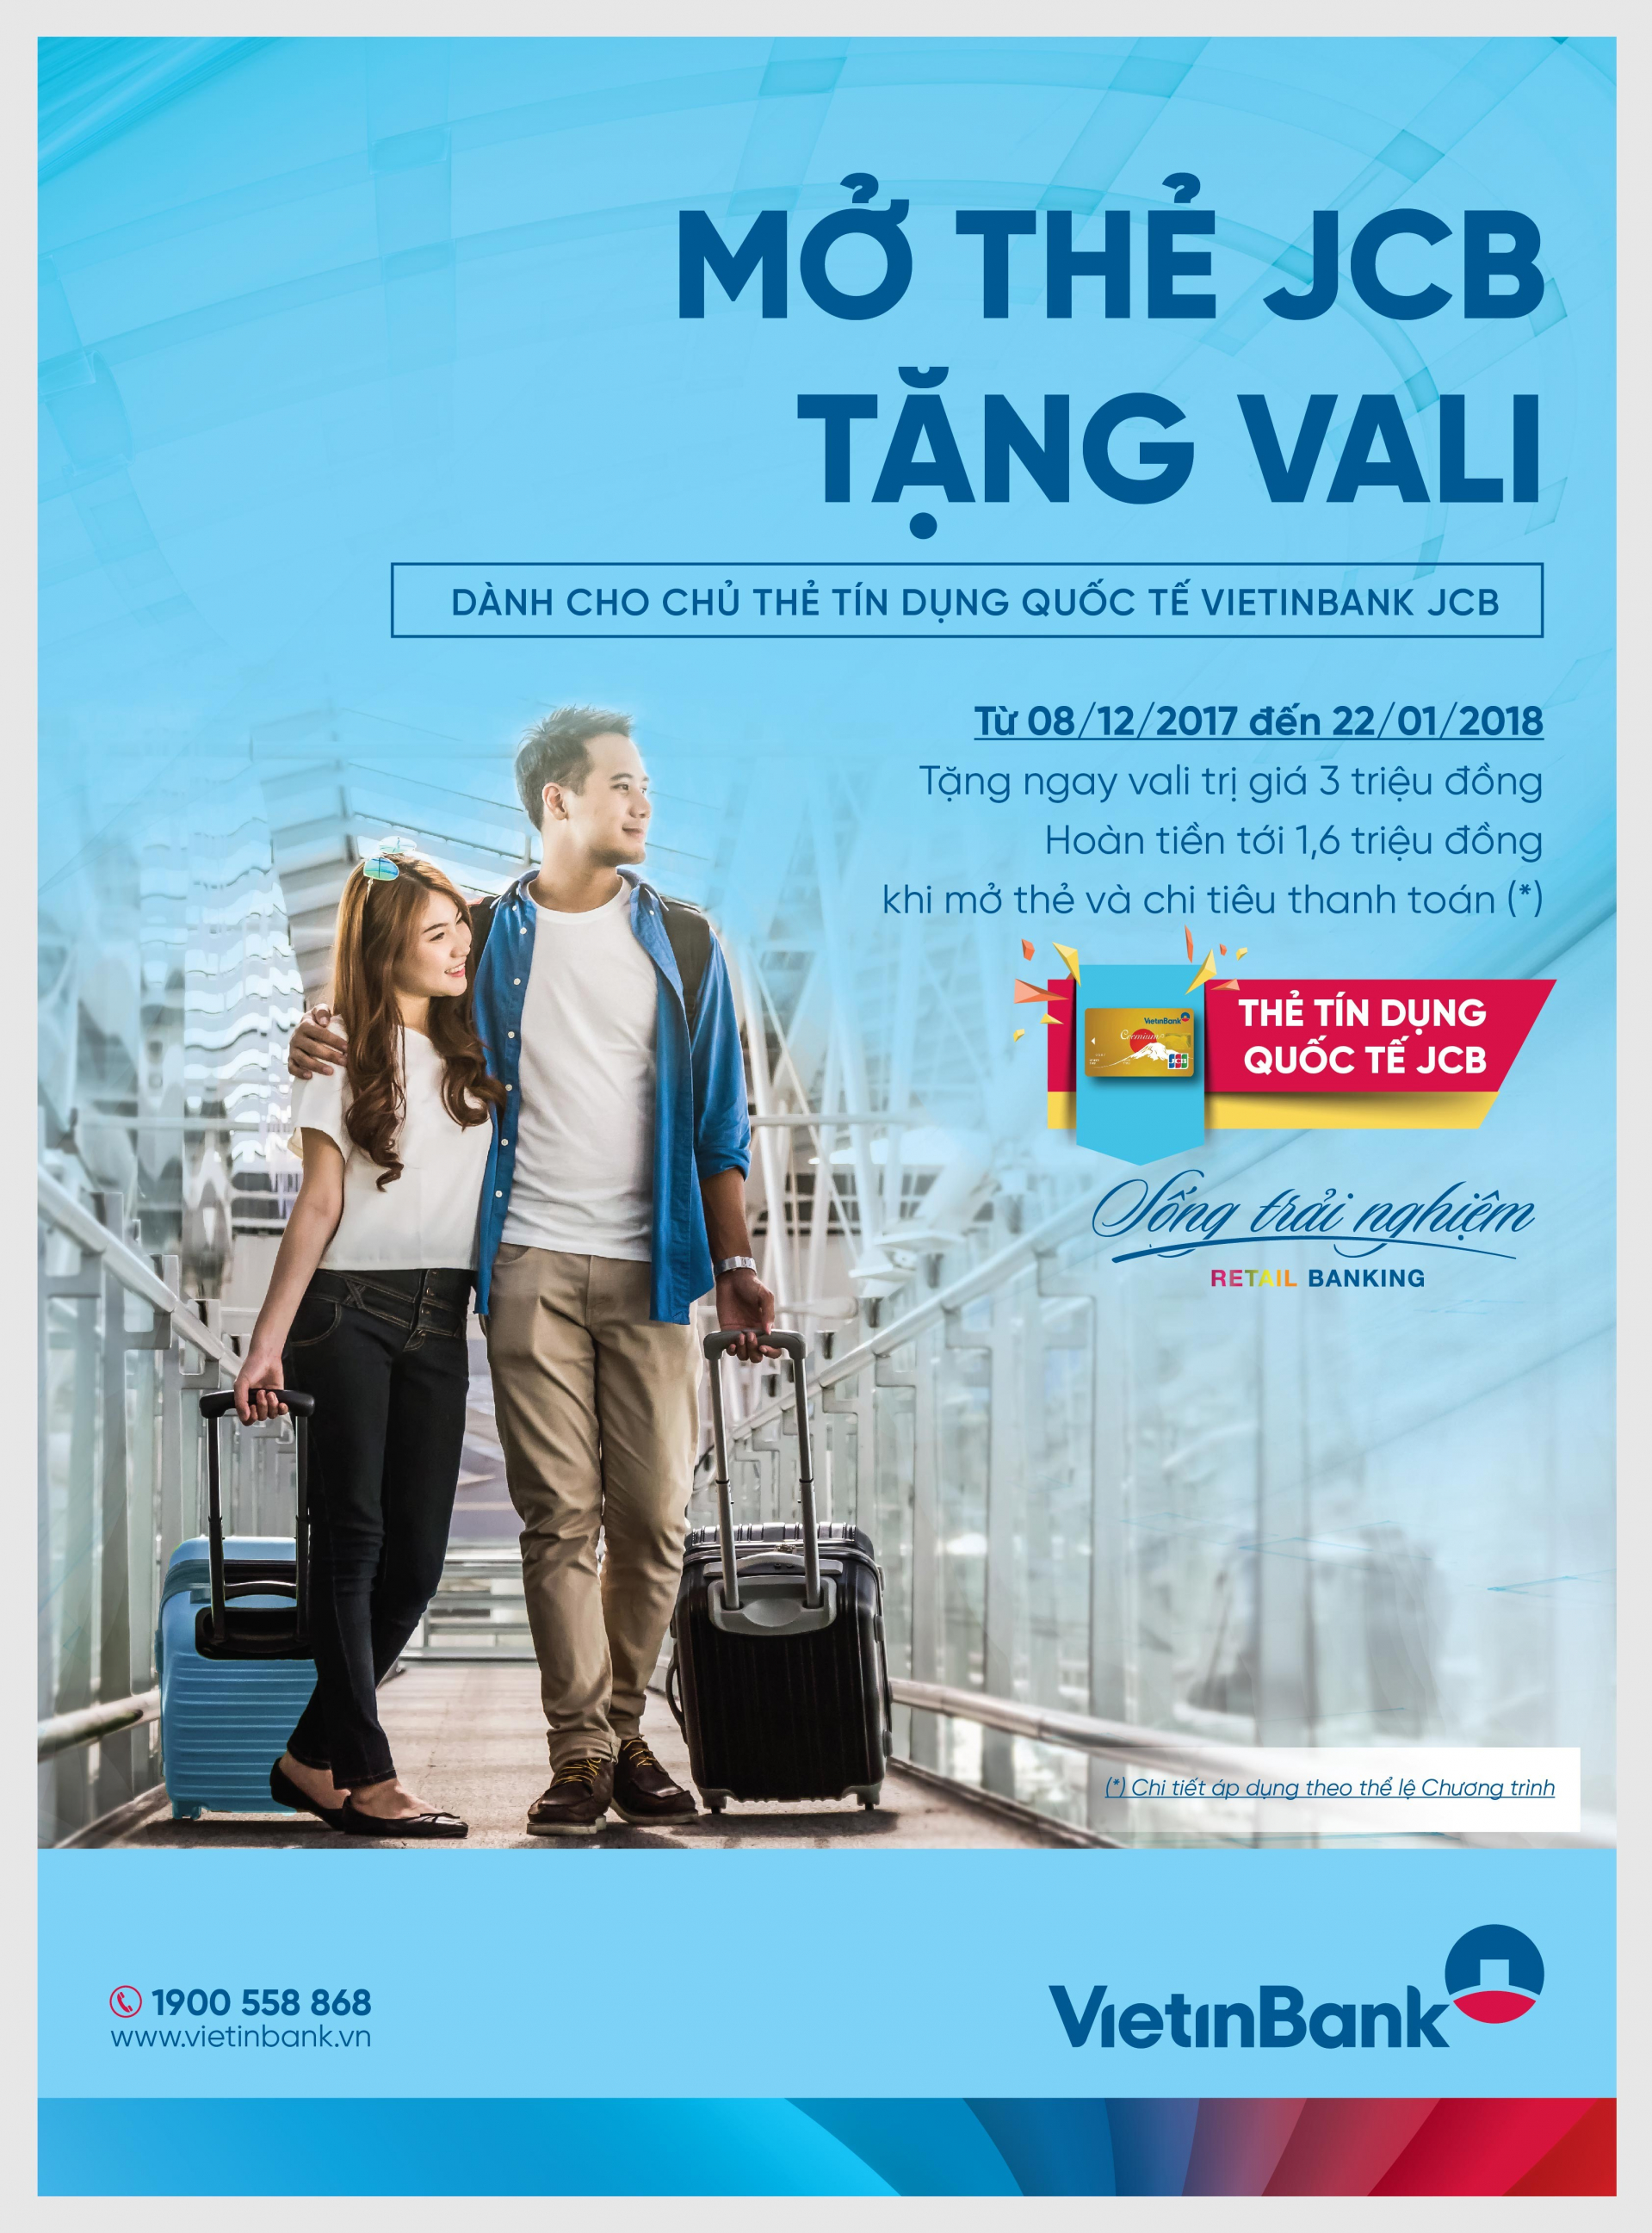 VietinBank ưu đãi 'Mở thẻ JCB - Tặng vali'